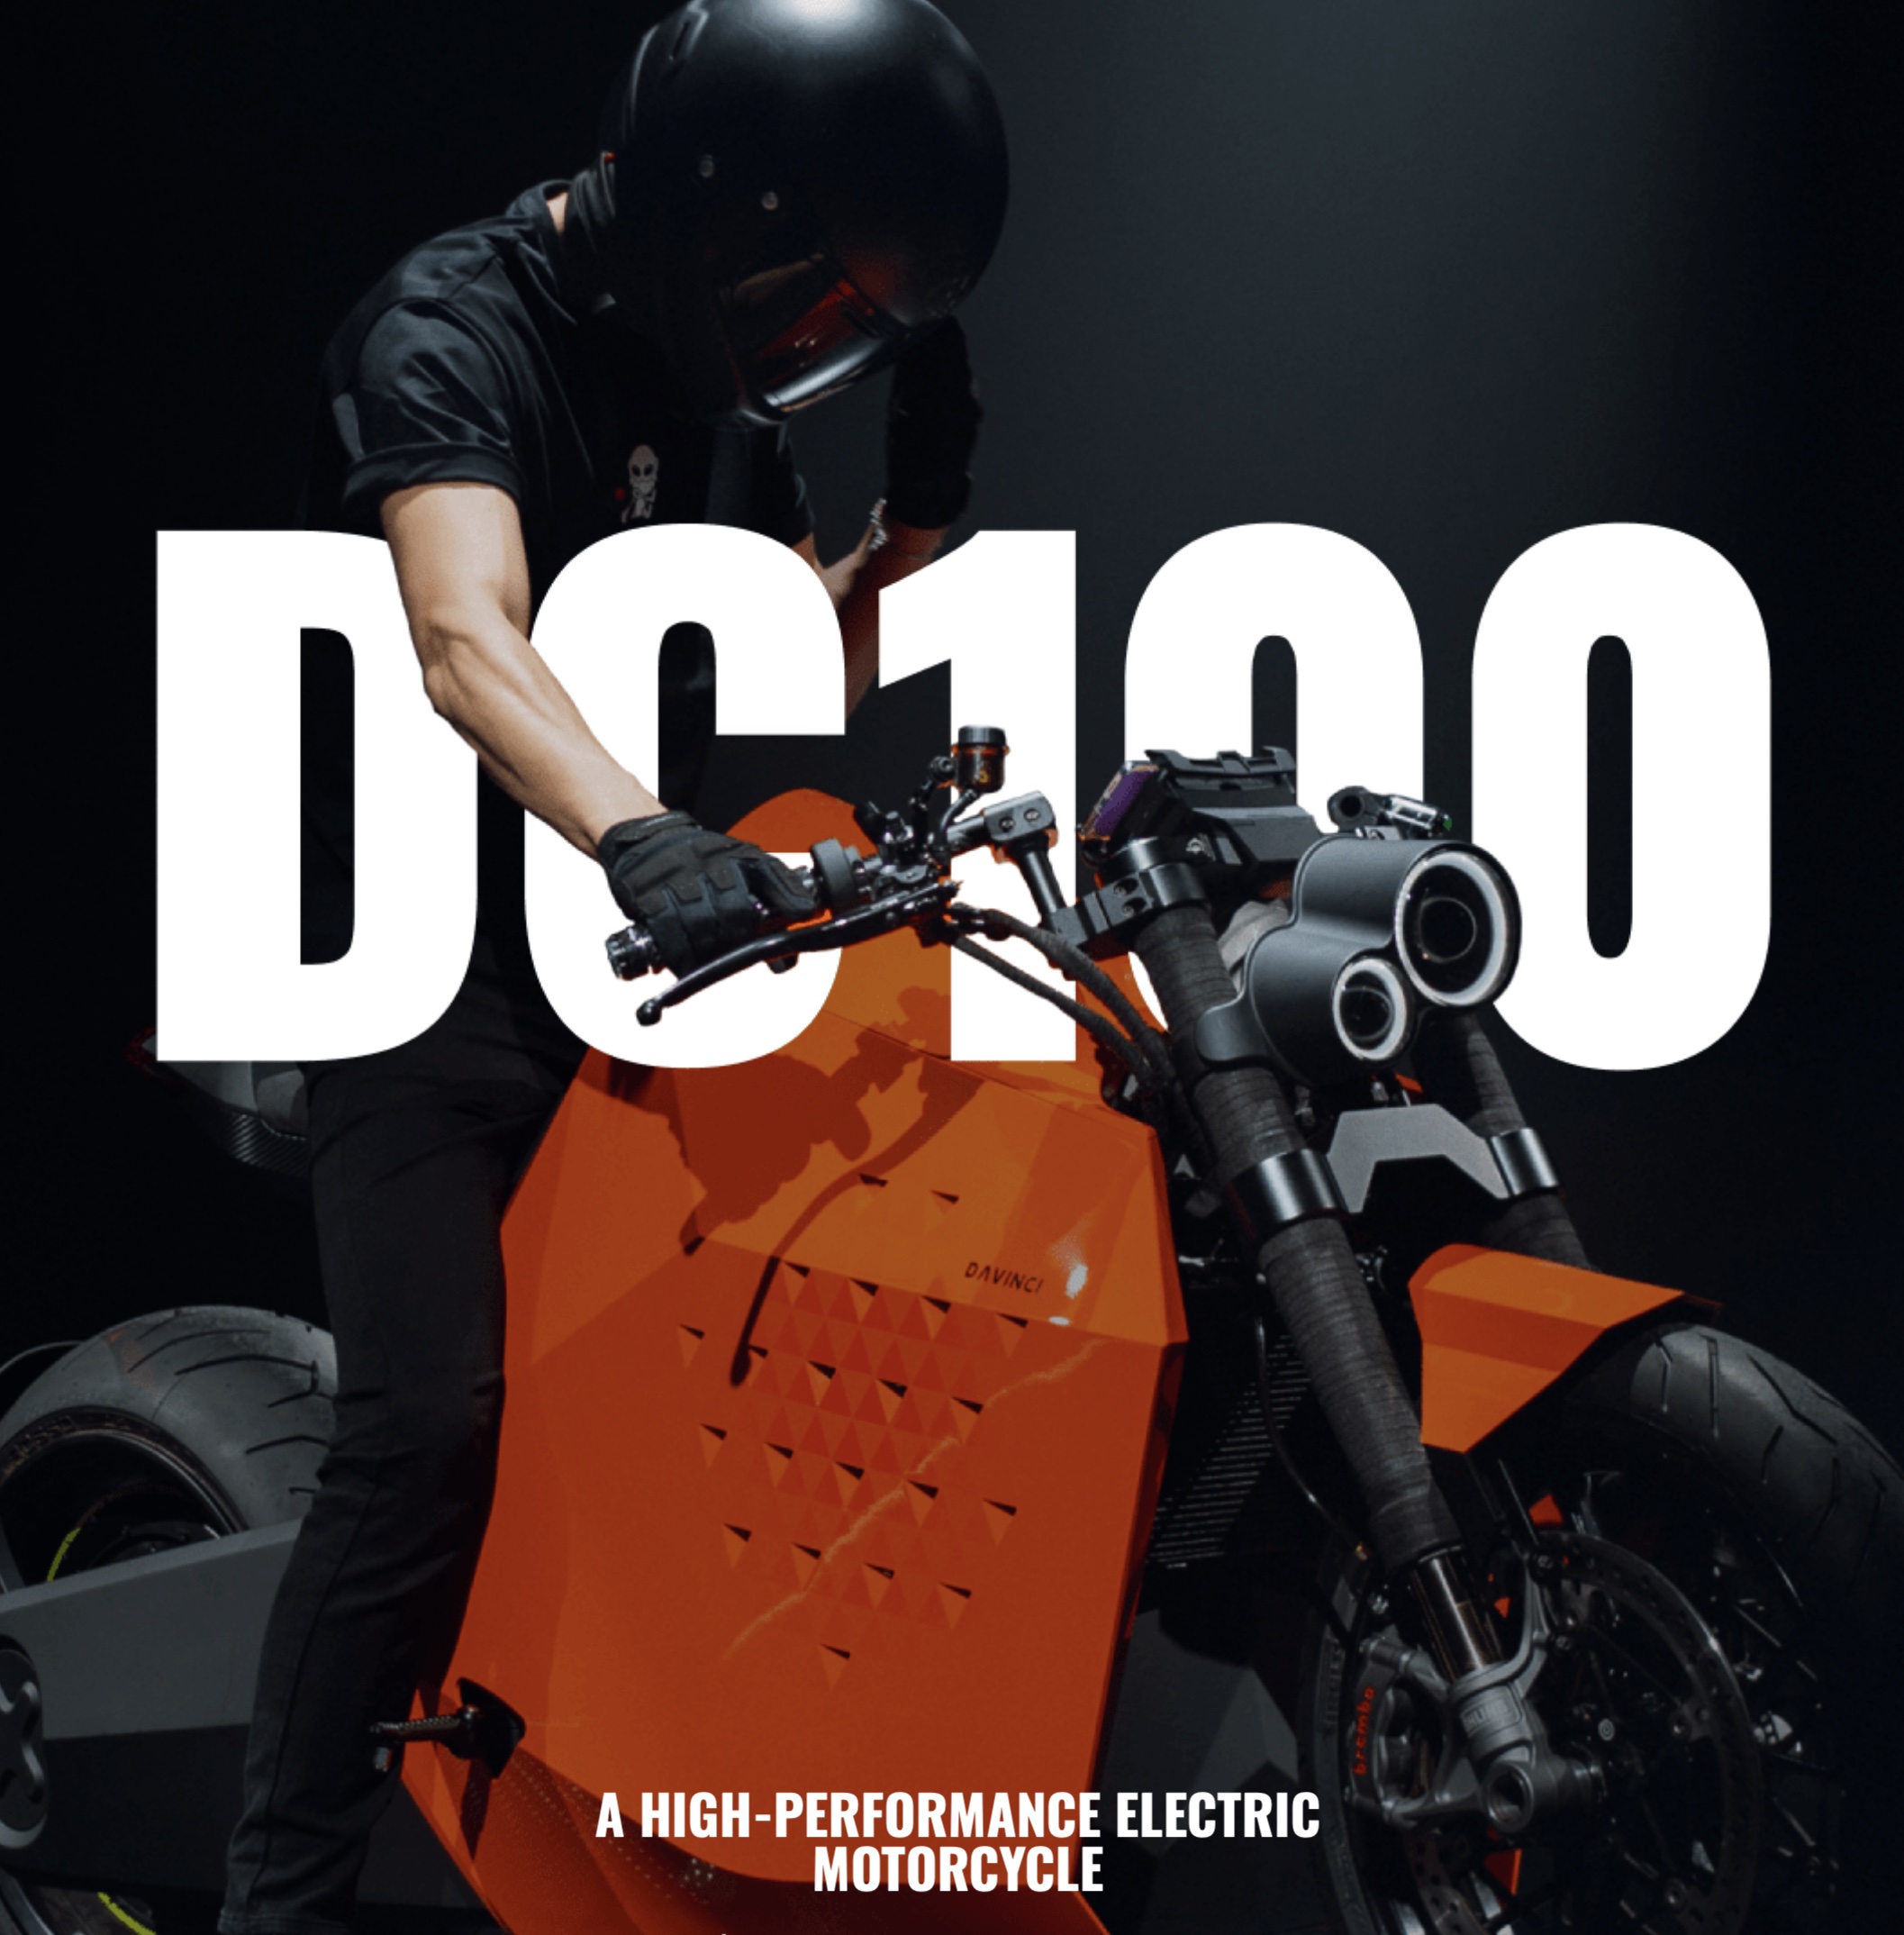 达芬奇的DC100，将在明年的消费电子展上展出。媒体来源达·芬奇。